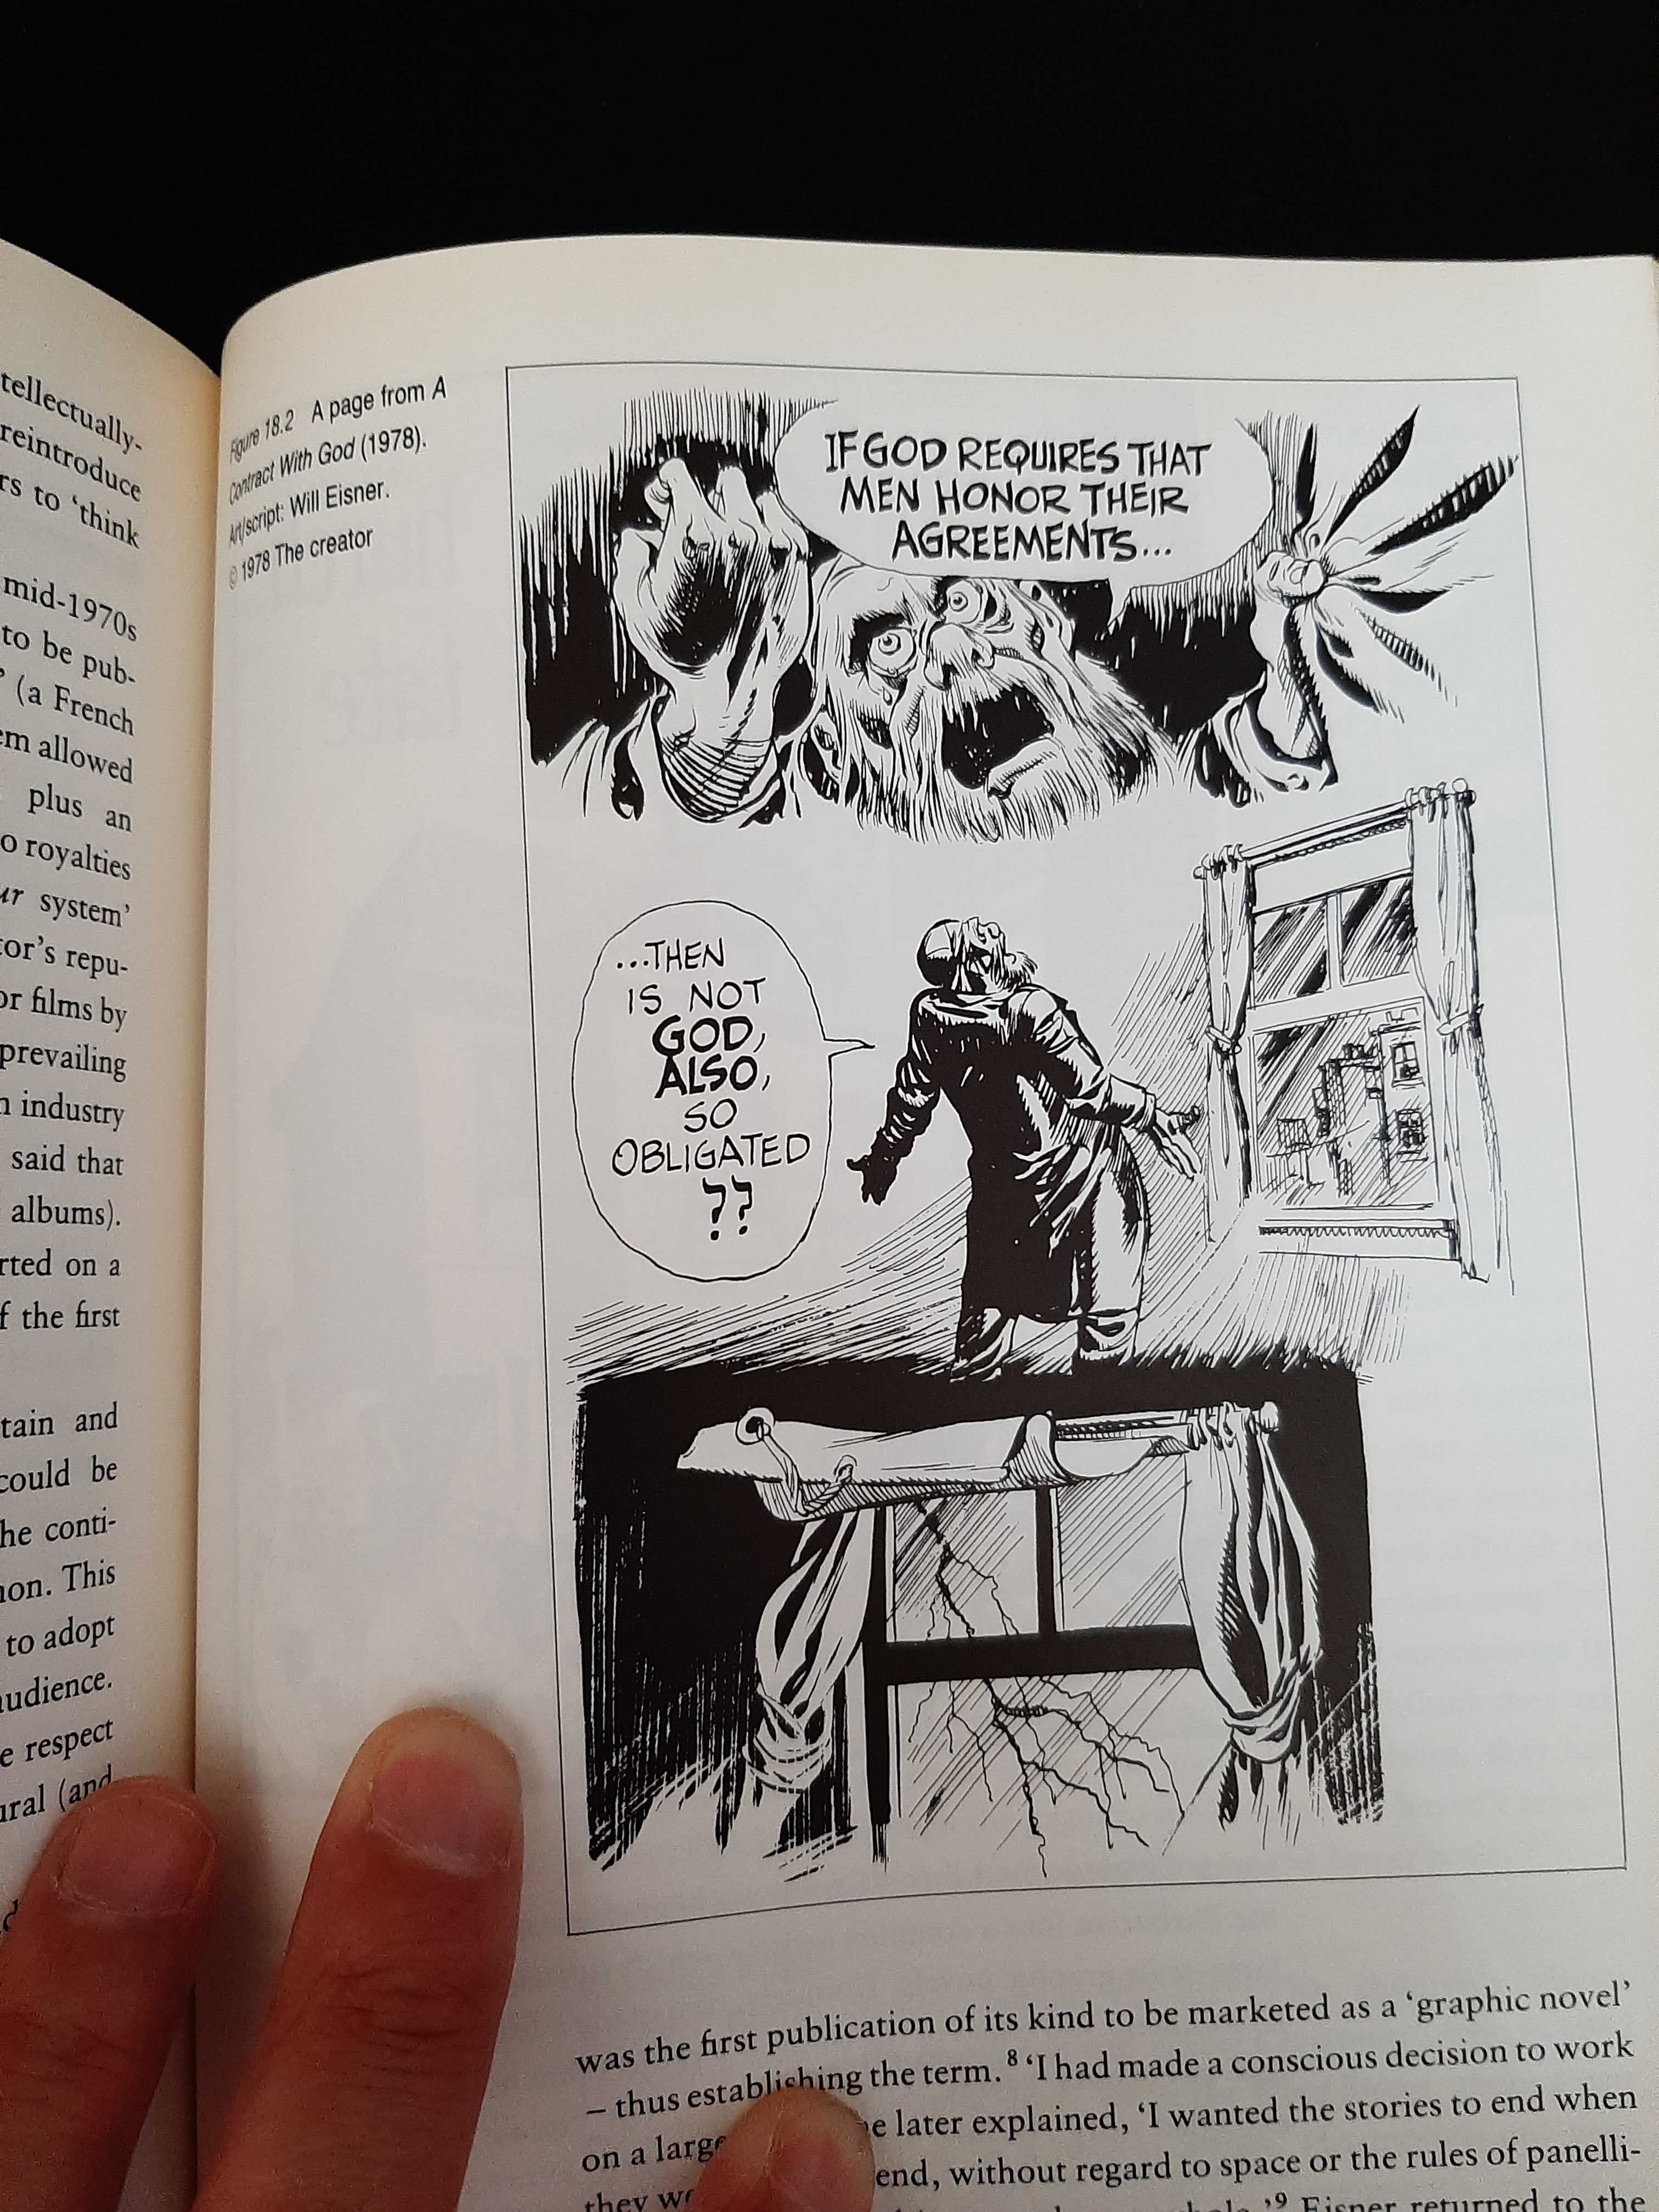 Roger Sabin – Adult Comics: an Introduction